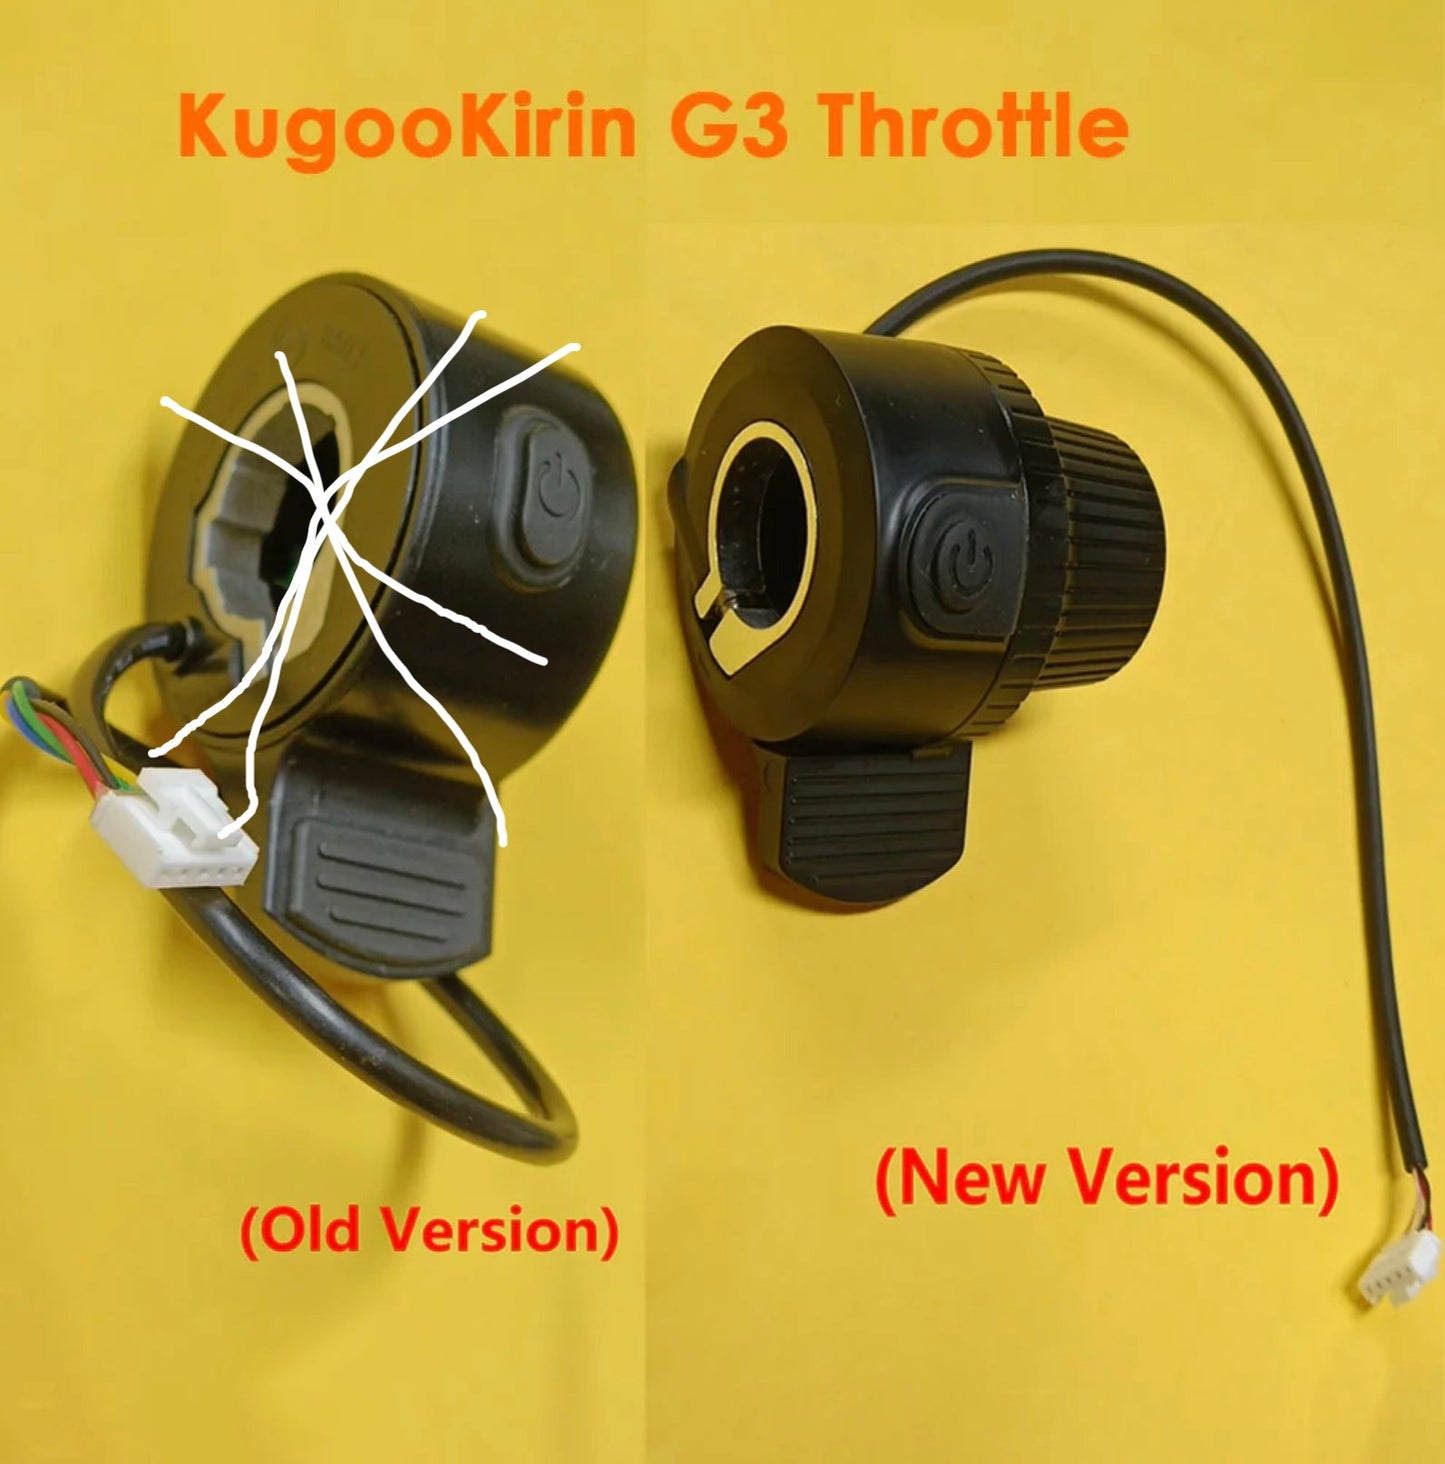 Kugoo kirin g3 throttle old & new available